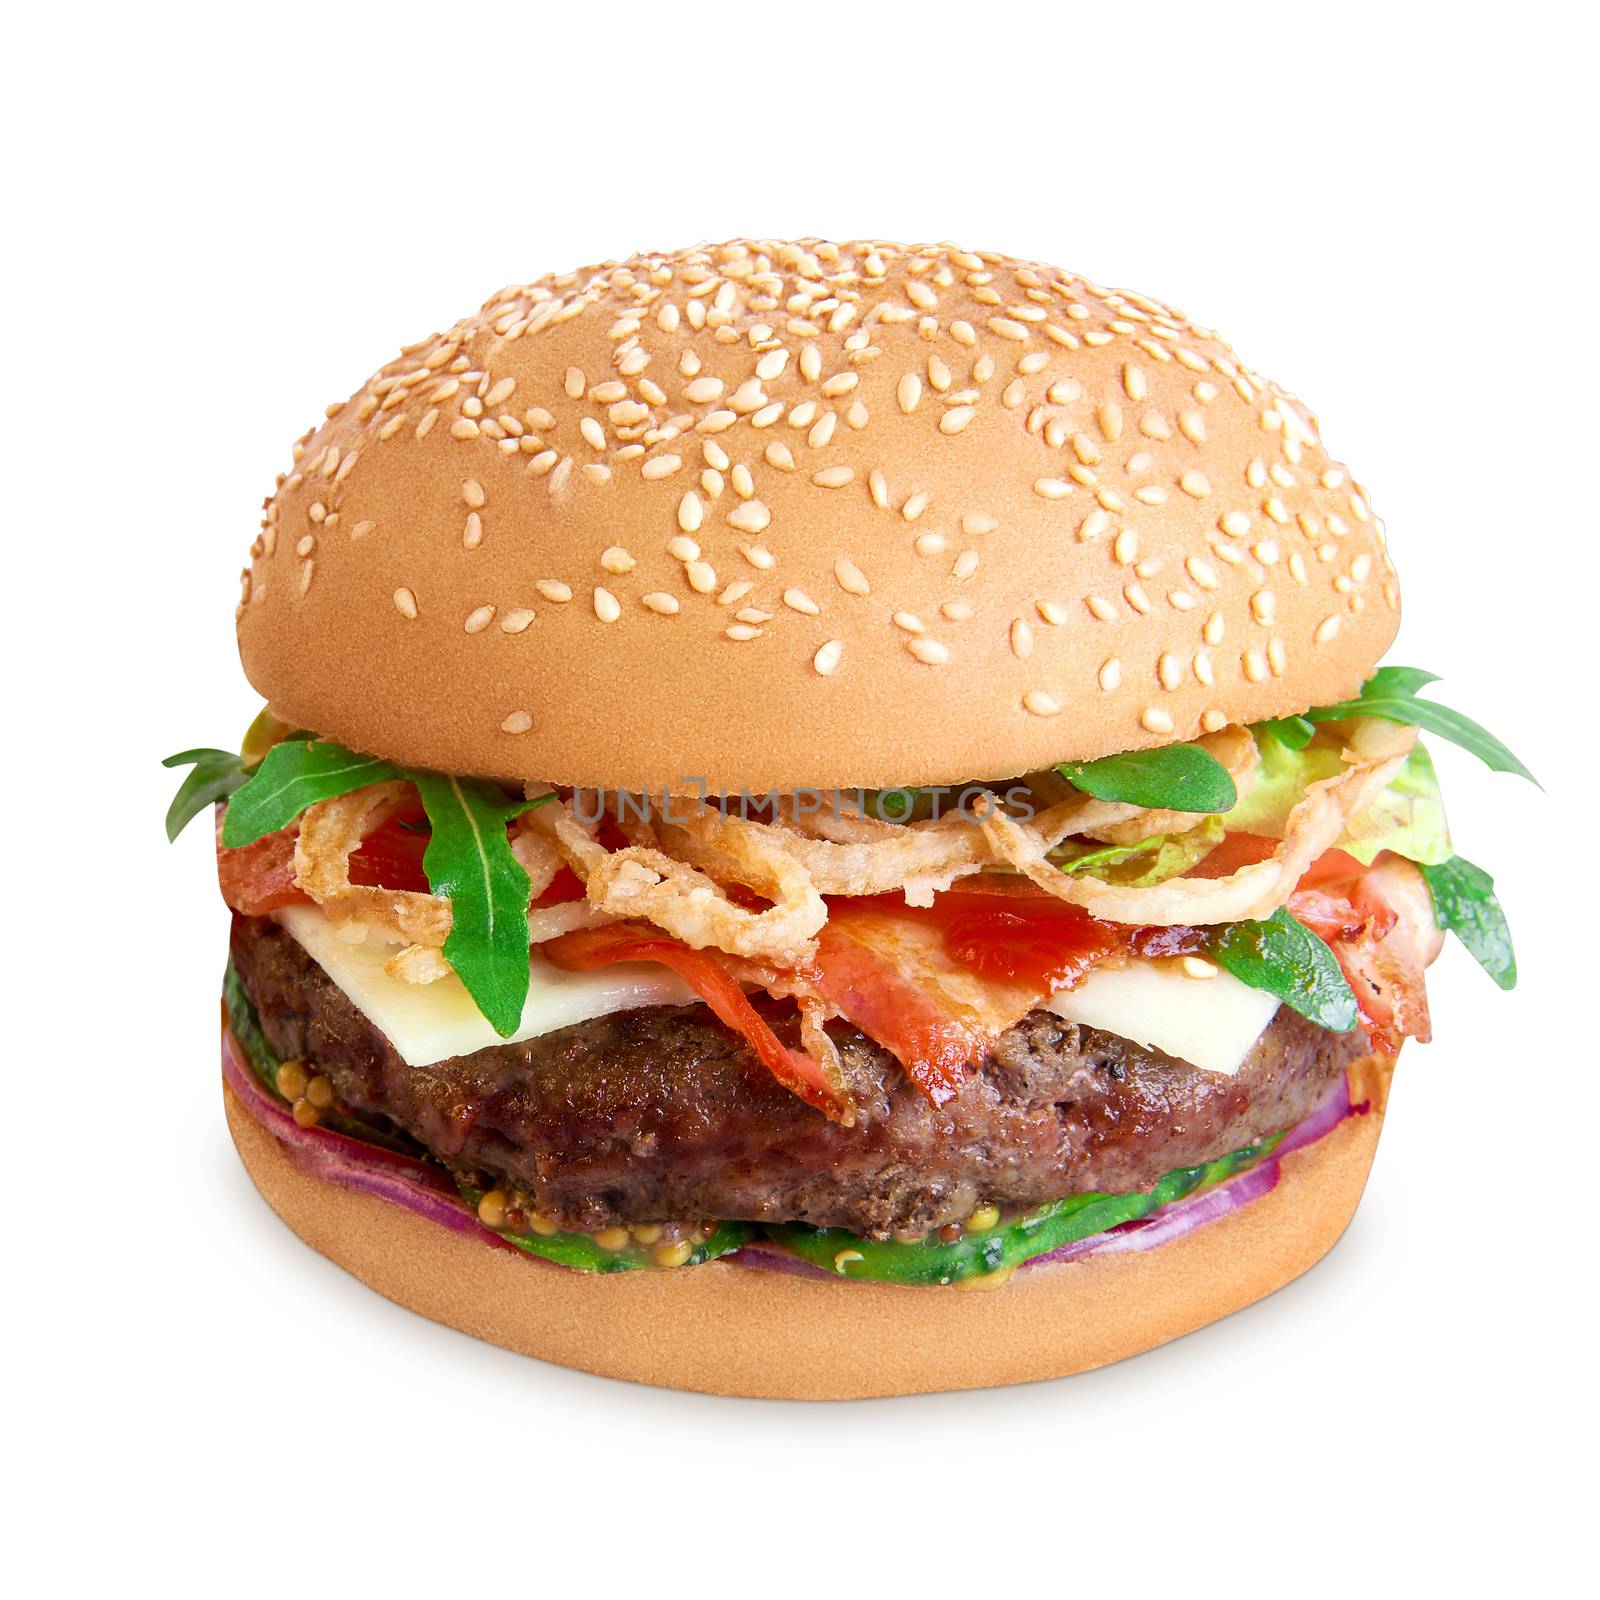 Hamburger isolated on white background by shivanetua